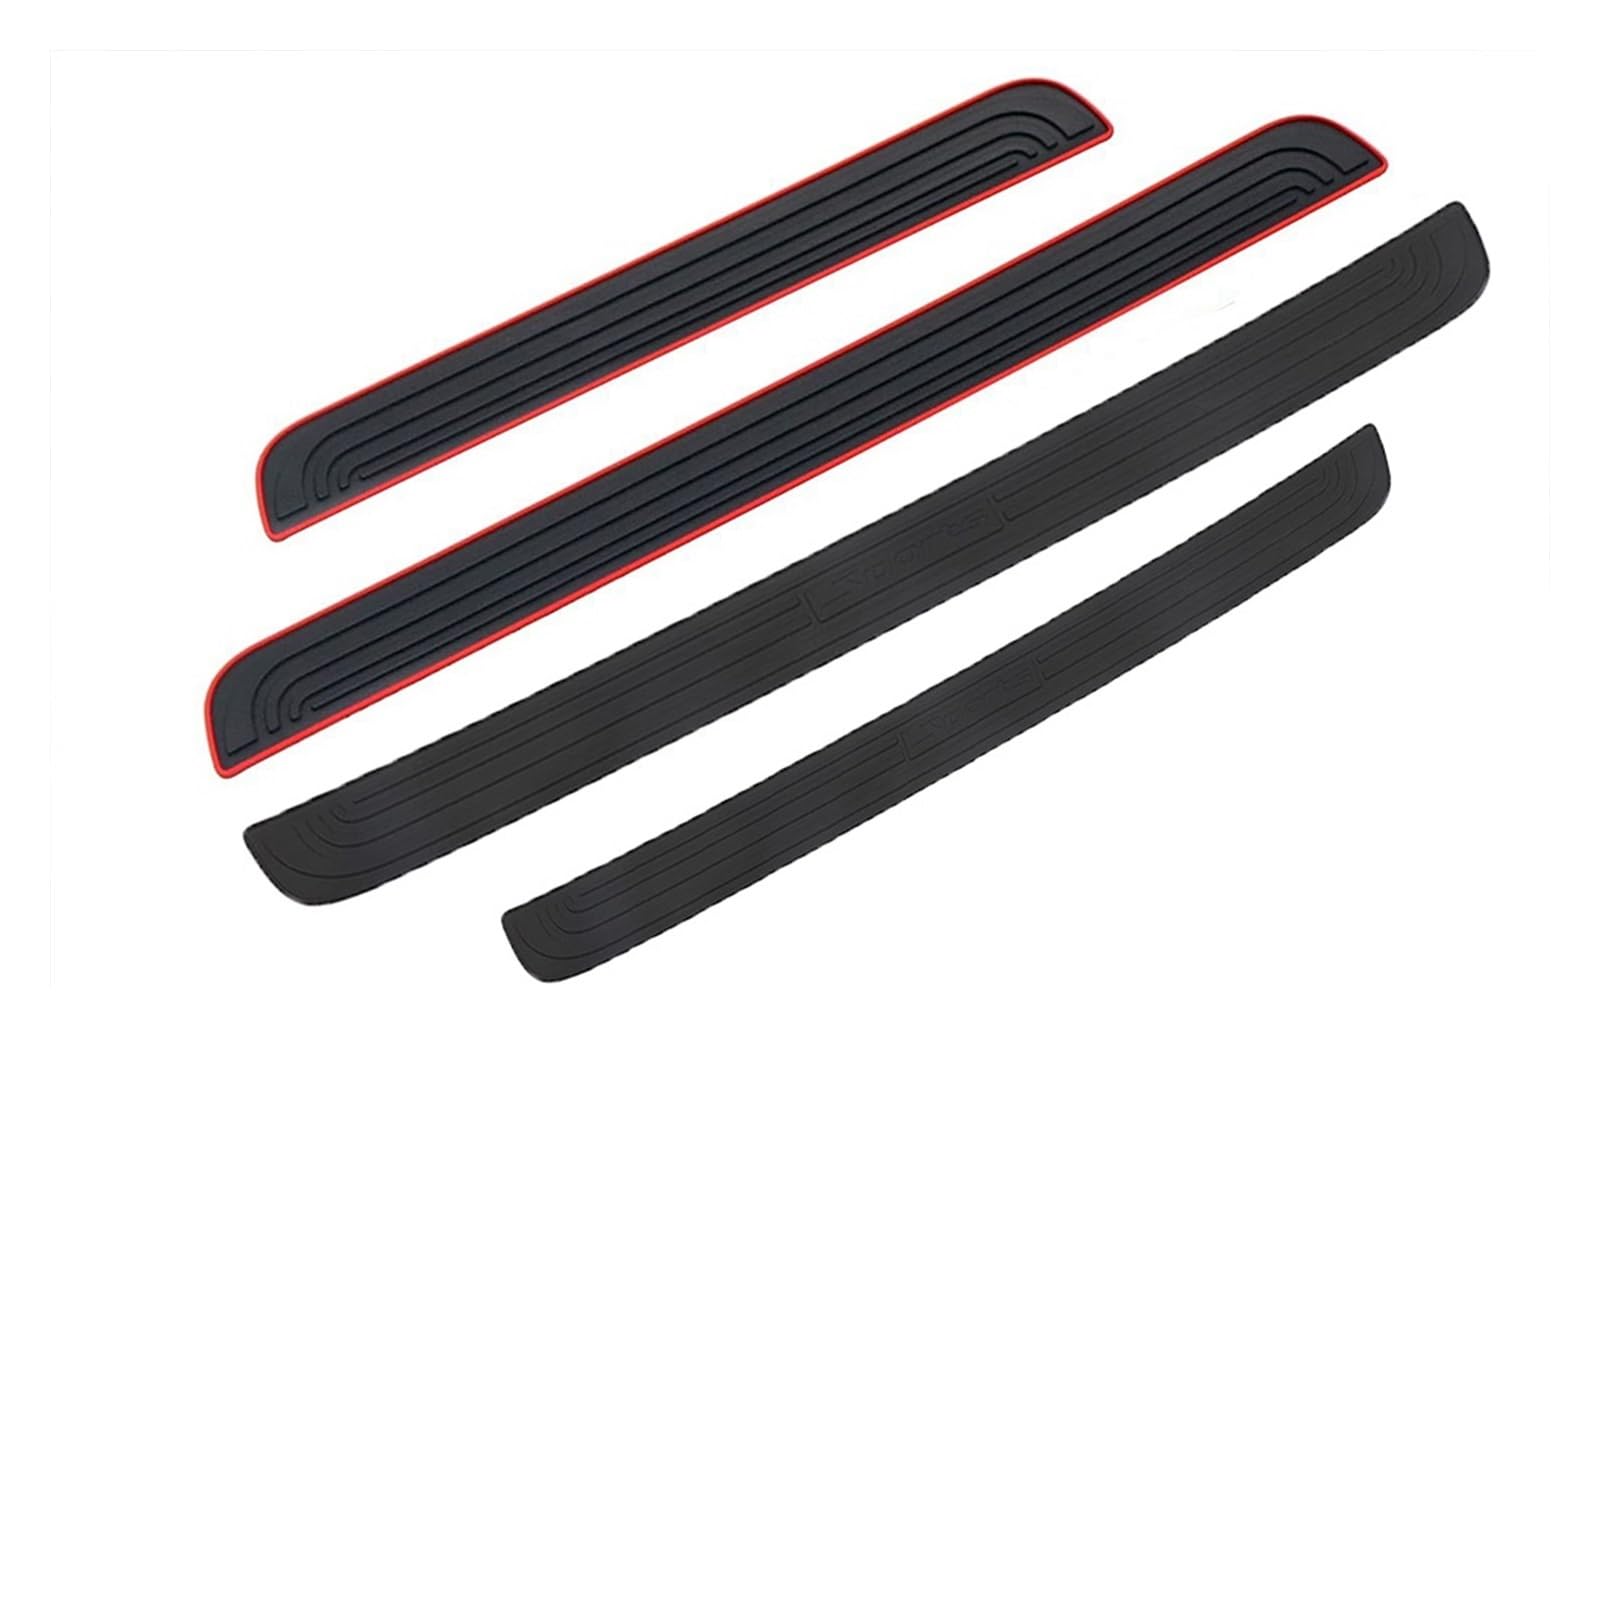 104 cm 90 cm Auto Stamm Tür Sill Platte Schutz Hinten Stoßstange Schutz Gummi Formteile Pad Trim Abdeckung Streifen Auto styling(Black-90cmx7cm) von MIXOAE